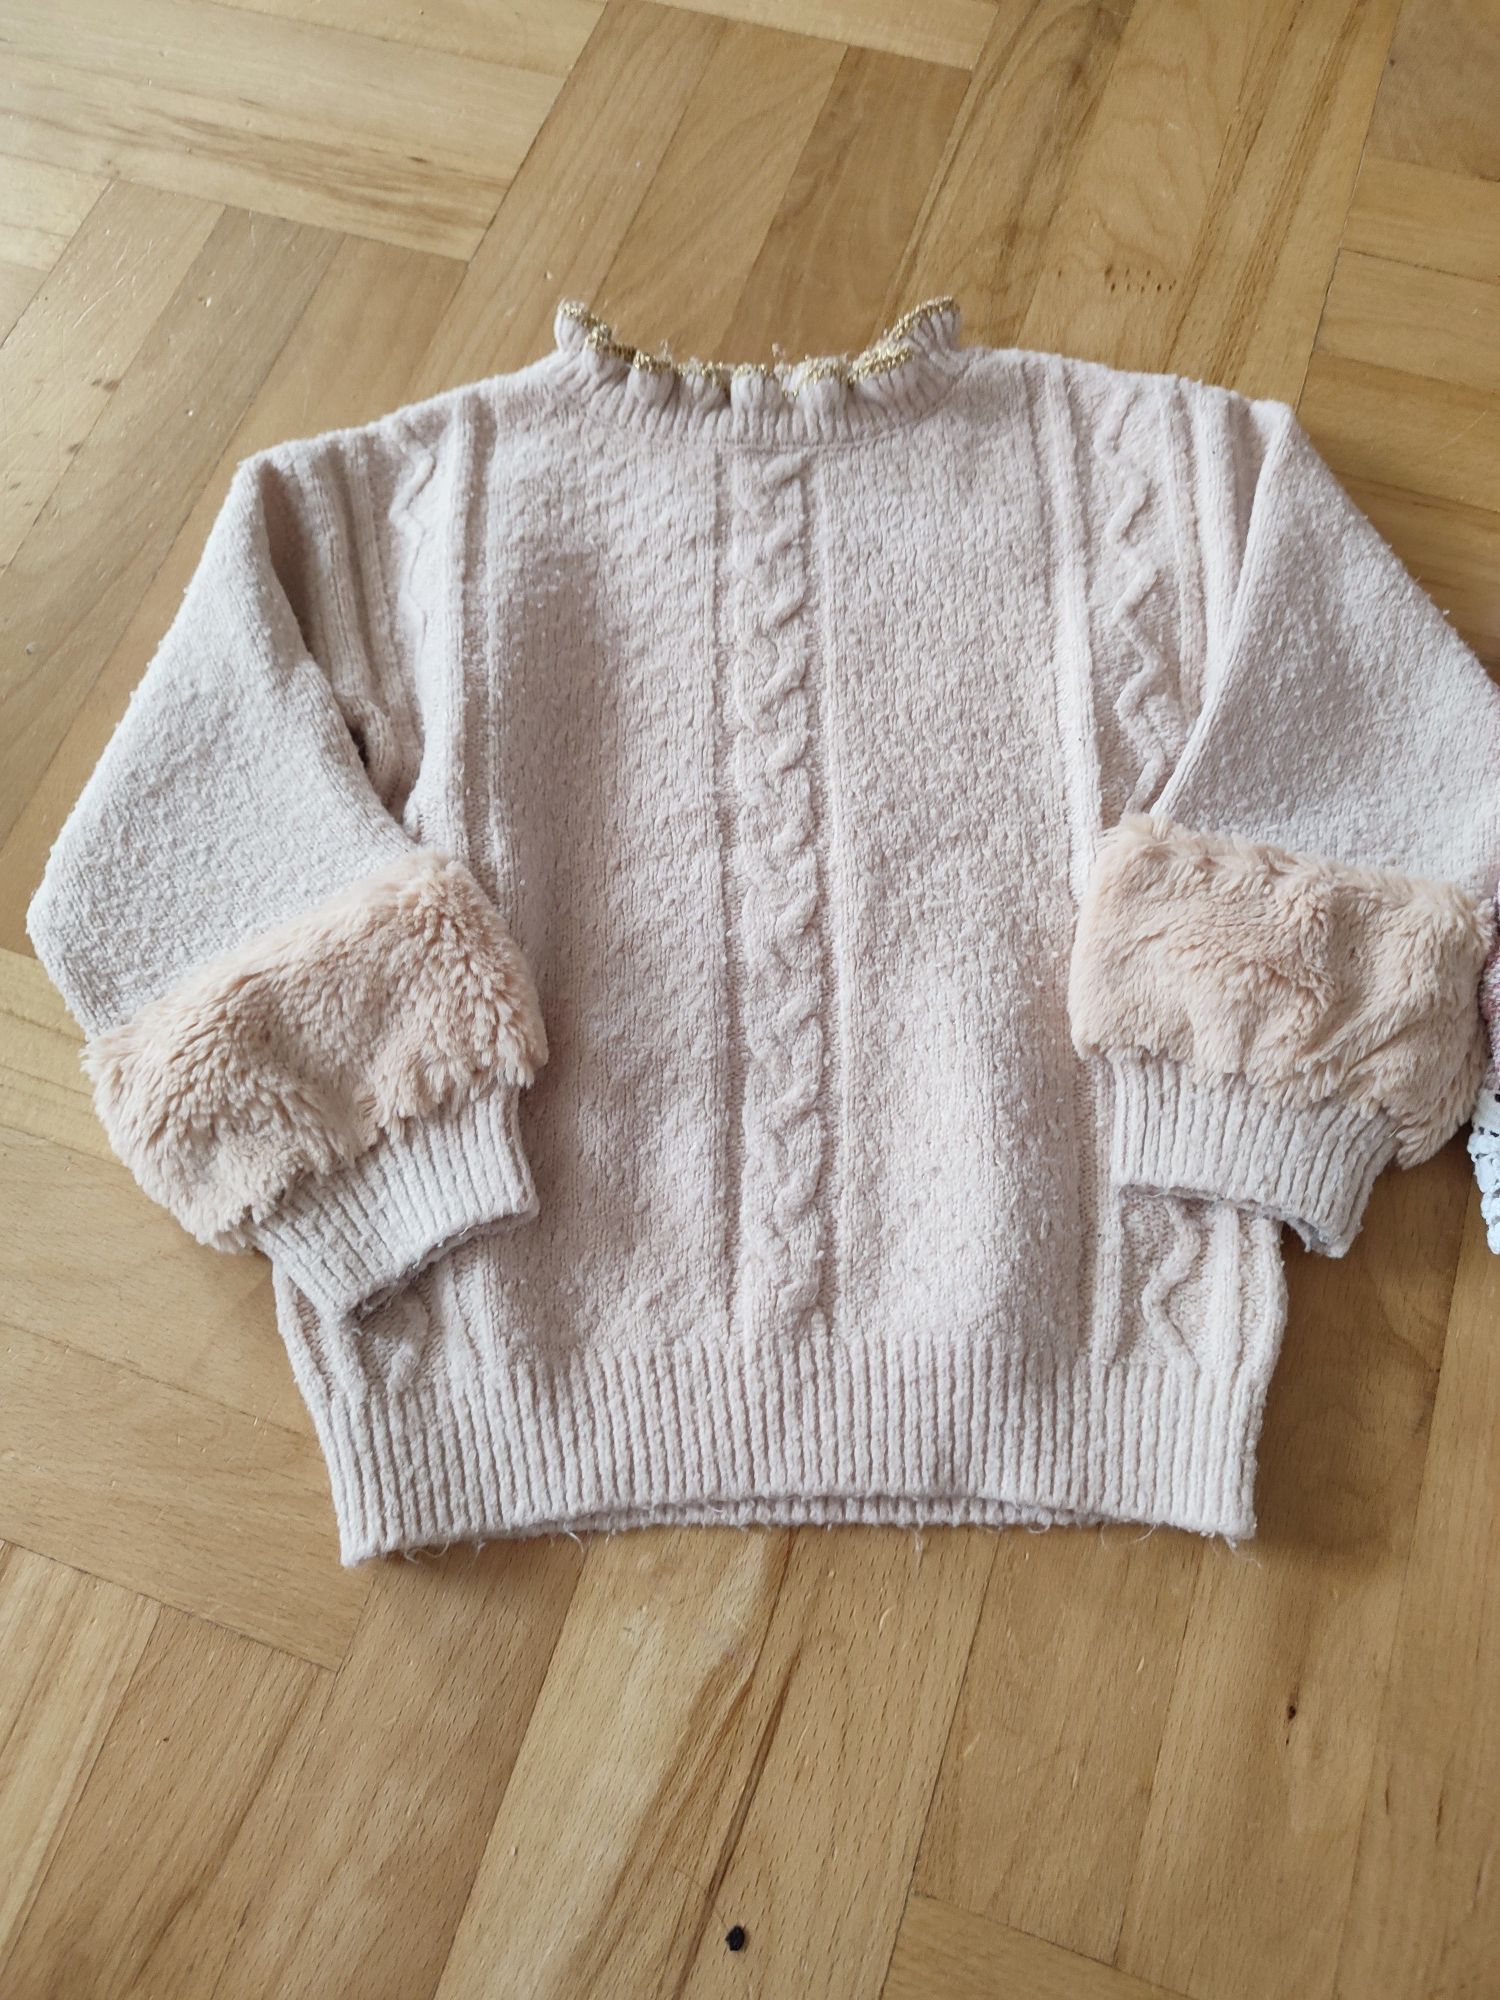 Swetry dla dziewczynki 98/104 8 sztuk+ gratisy